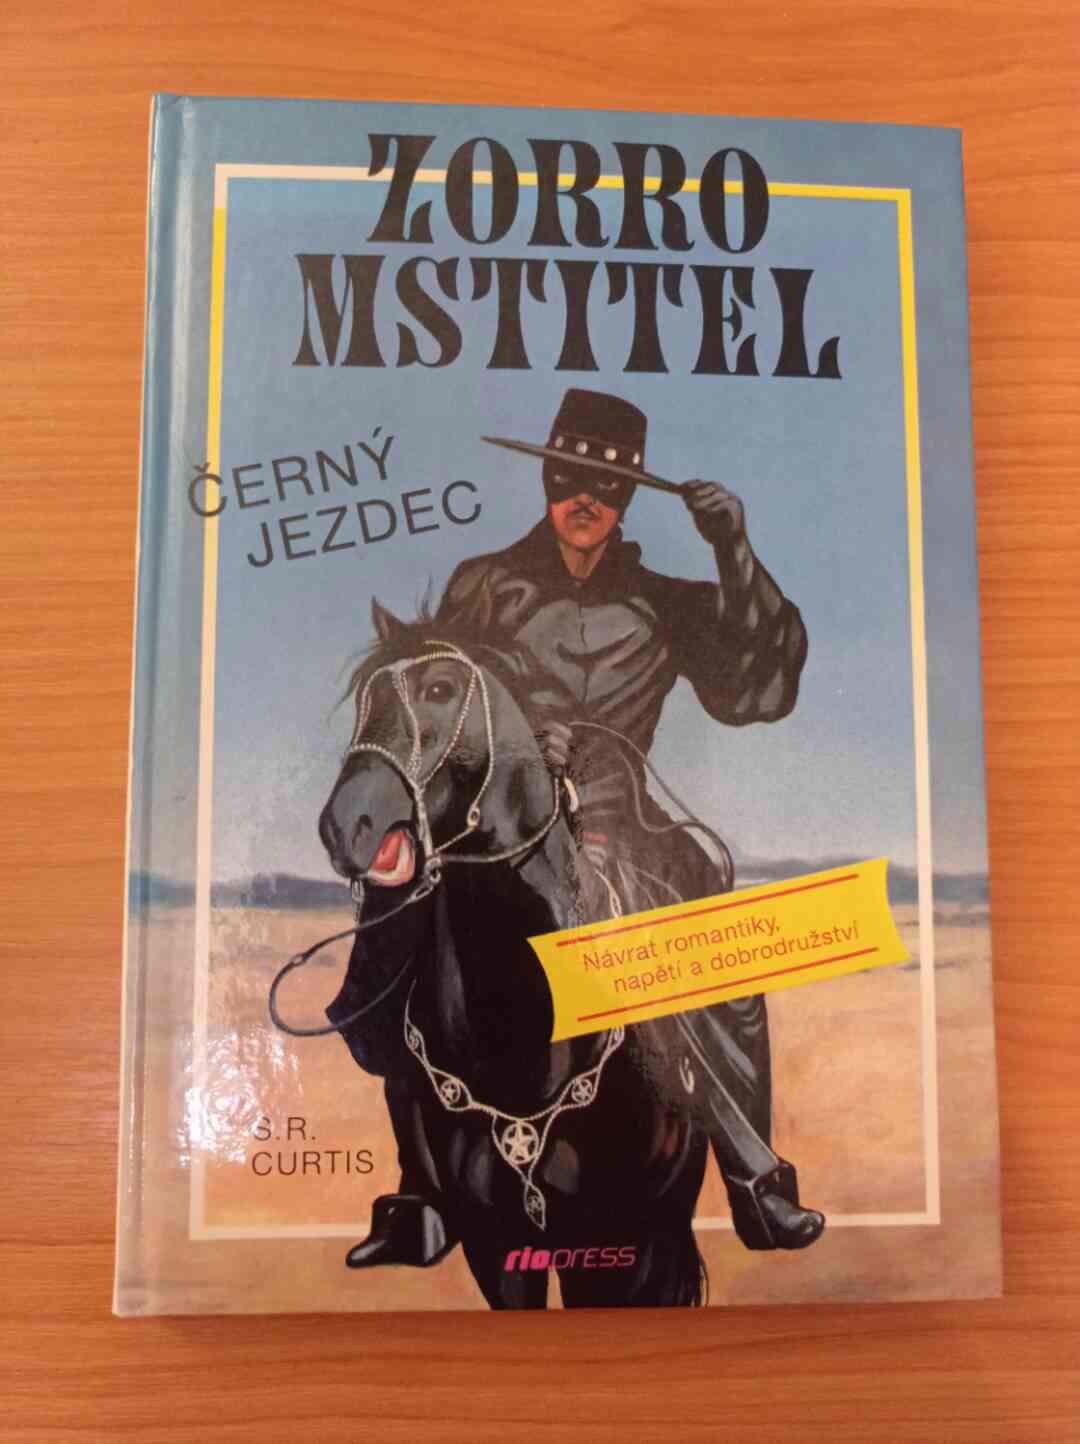 S. R. CURTIS - Zorro Mstitel (Černý jezdec) - foto 1